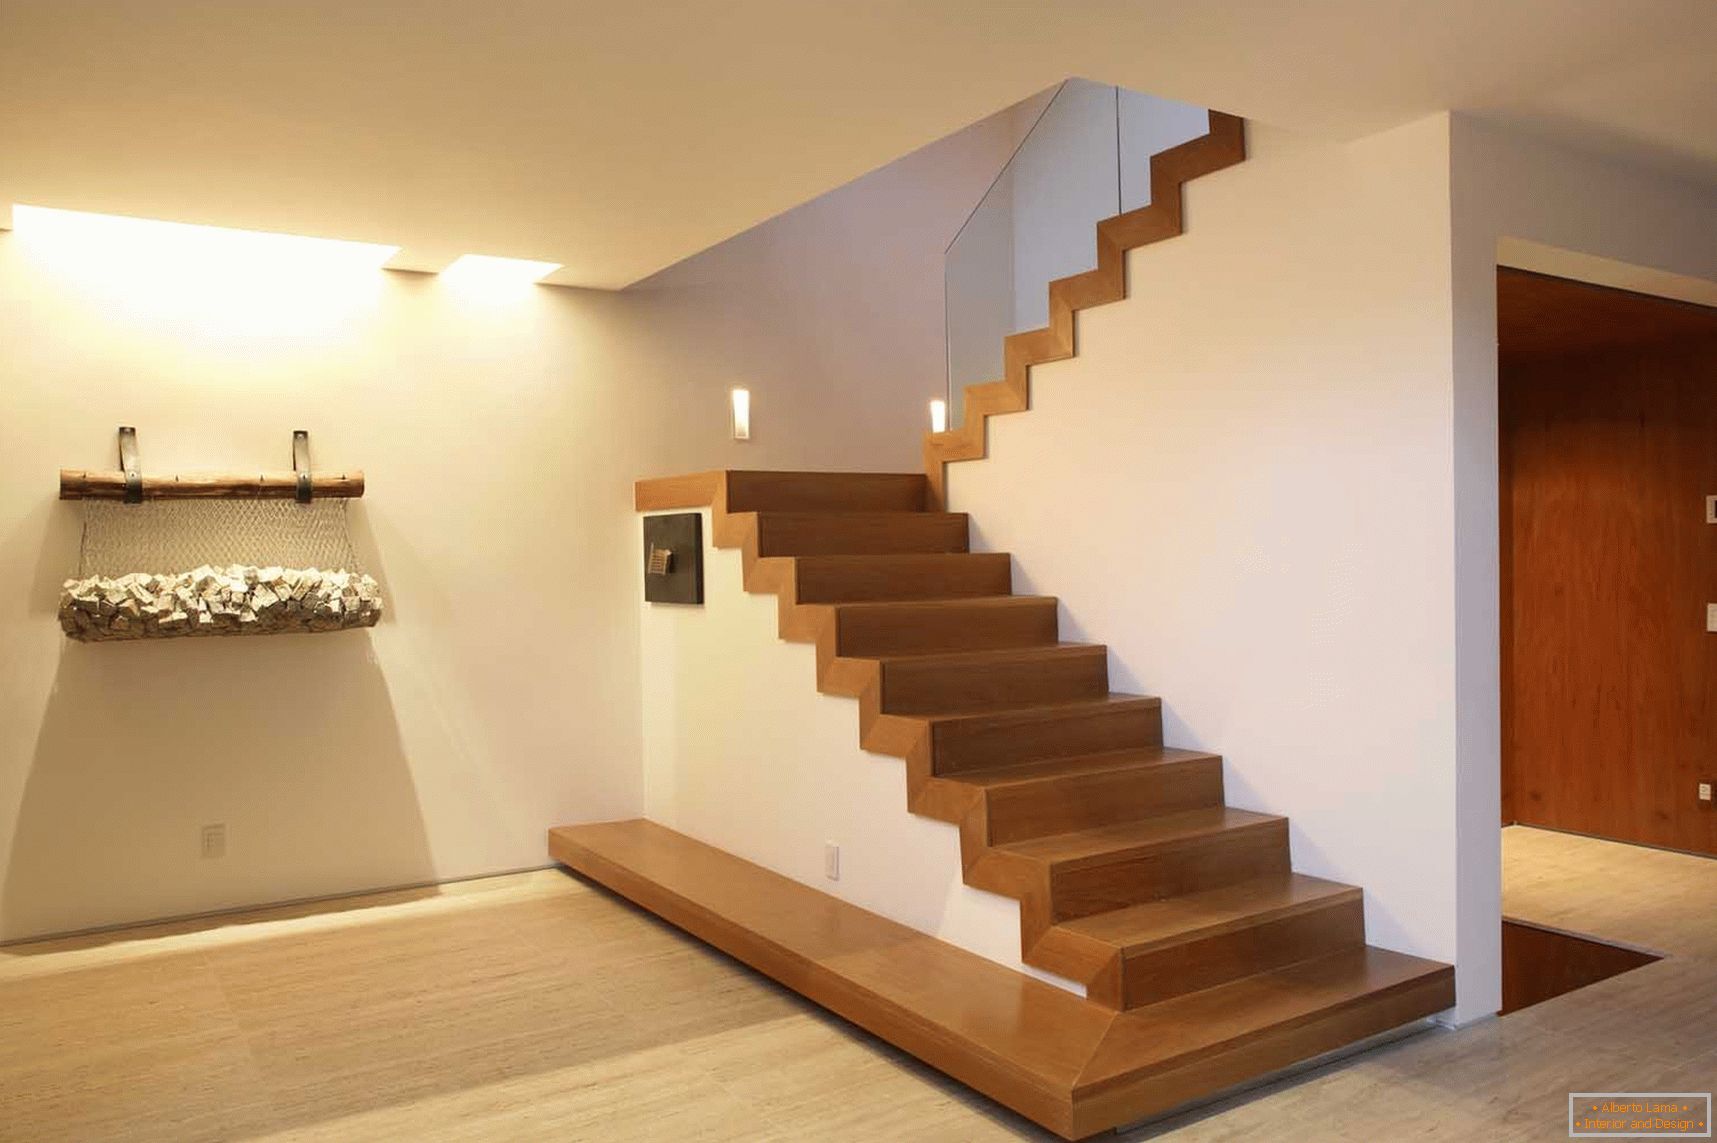 Escaliers dans le style du minimalisme